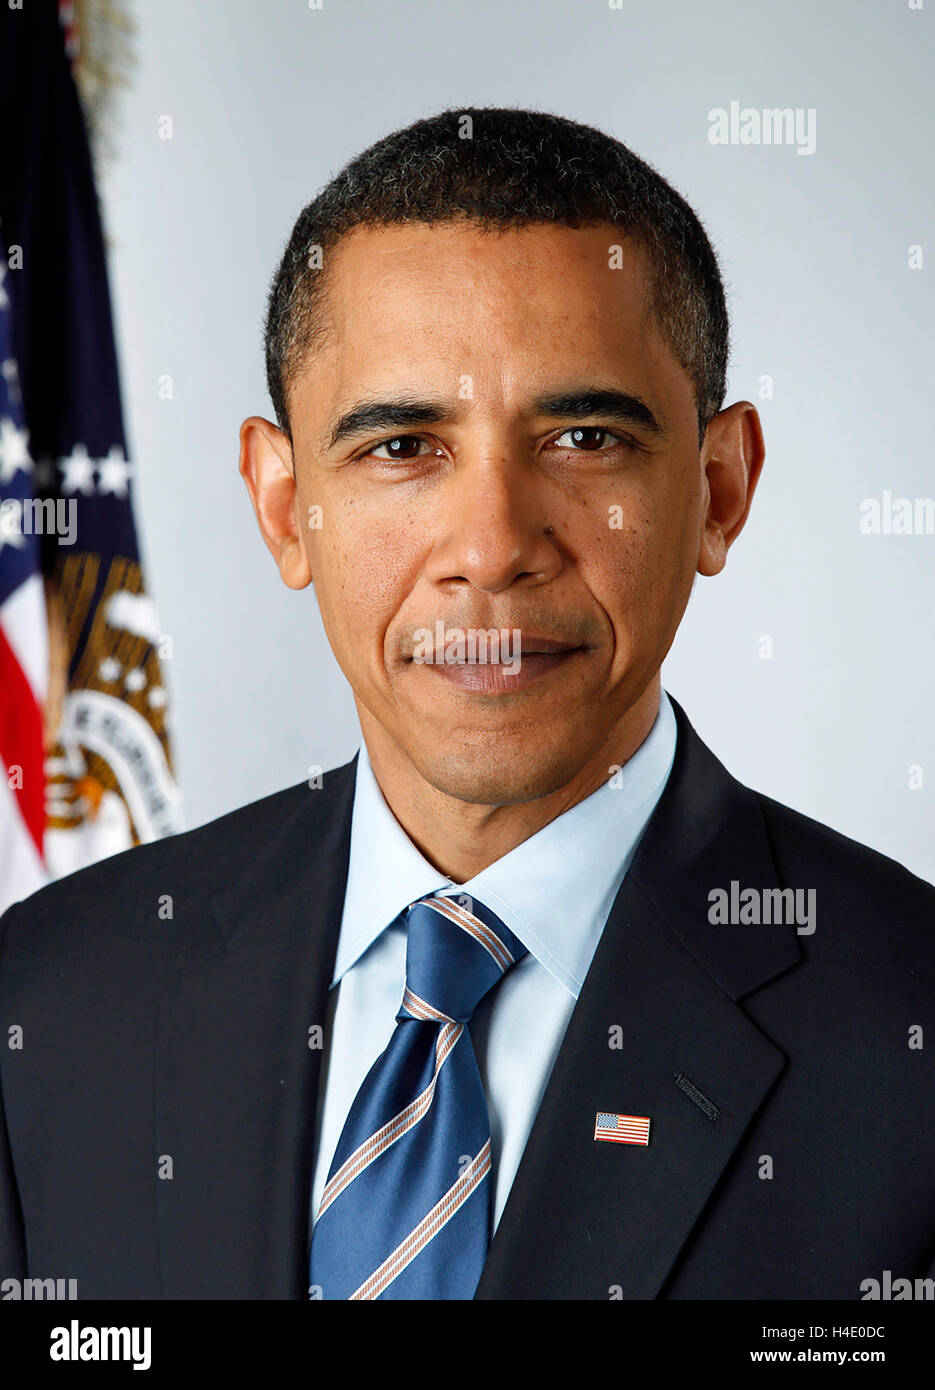 Barack Obama. Offizielles Porträt von Barack Obama (b,1961), dem Präsidenten der USA von 44th, aufgenommen am 13th 2009. Januar, als er zum Präsidenten gewählt wurde und eine Woche vor seinem Amtsantritt. Stockfoto